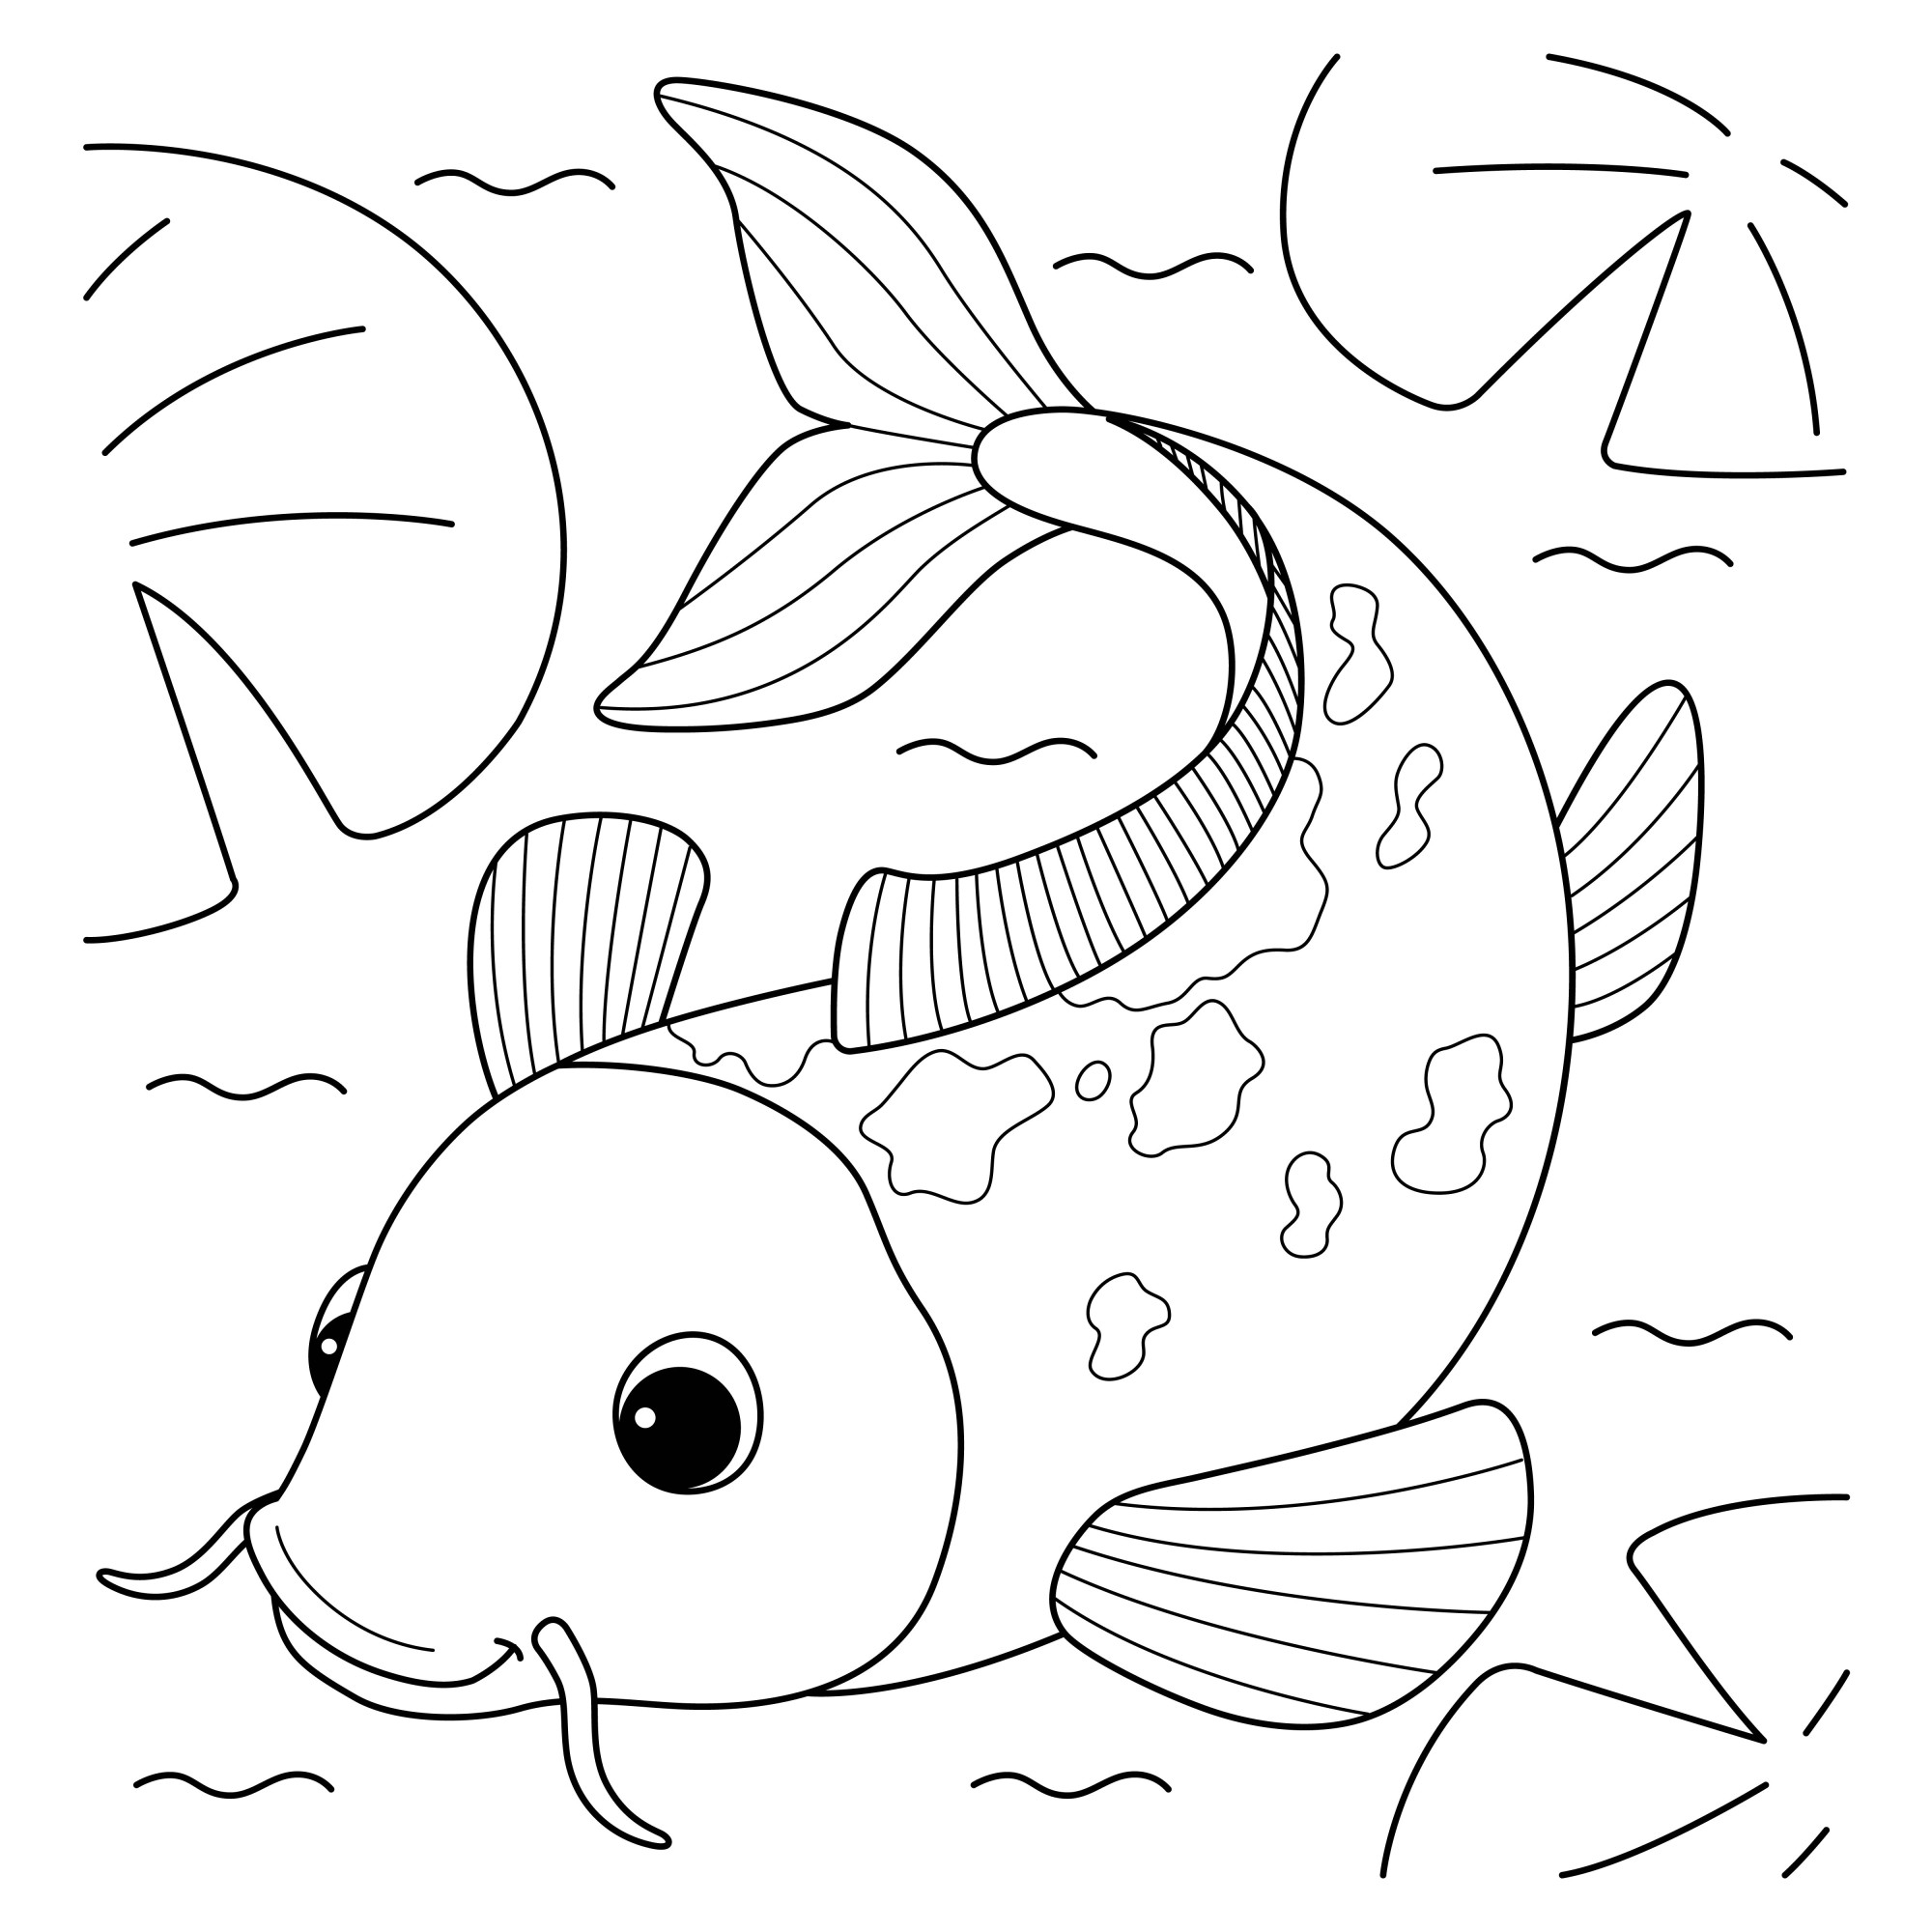 Раскраска для детей: рыба сом с усами